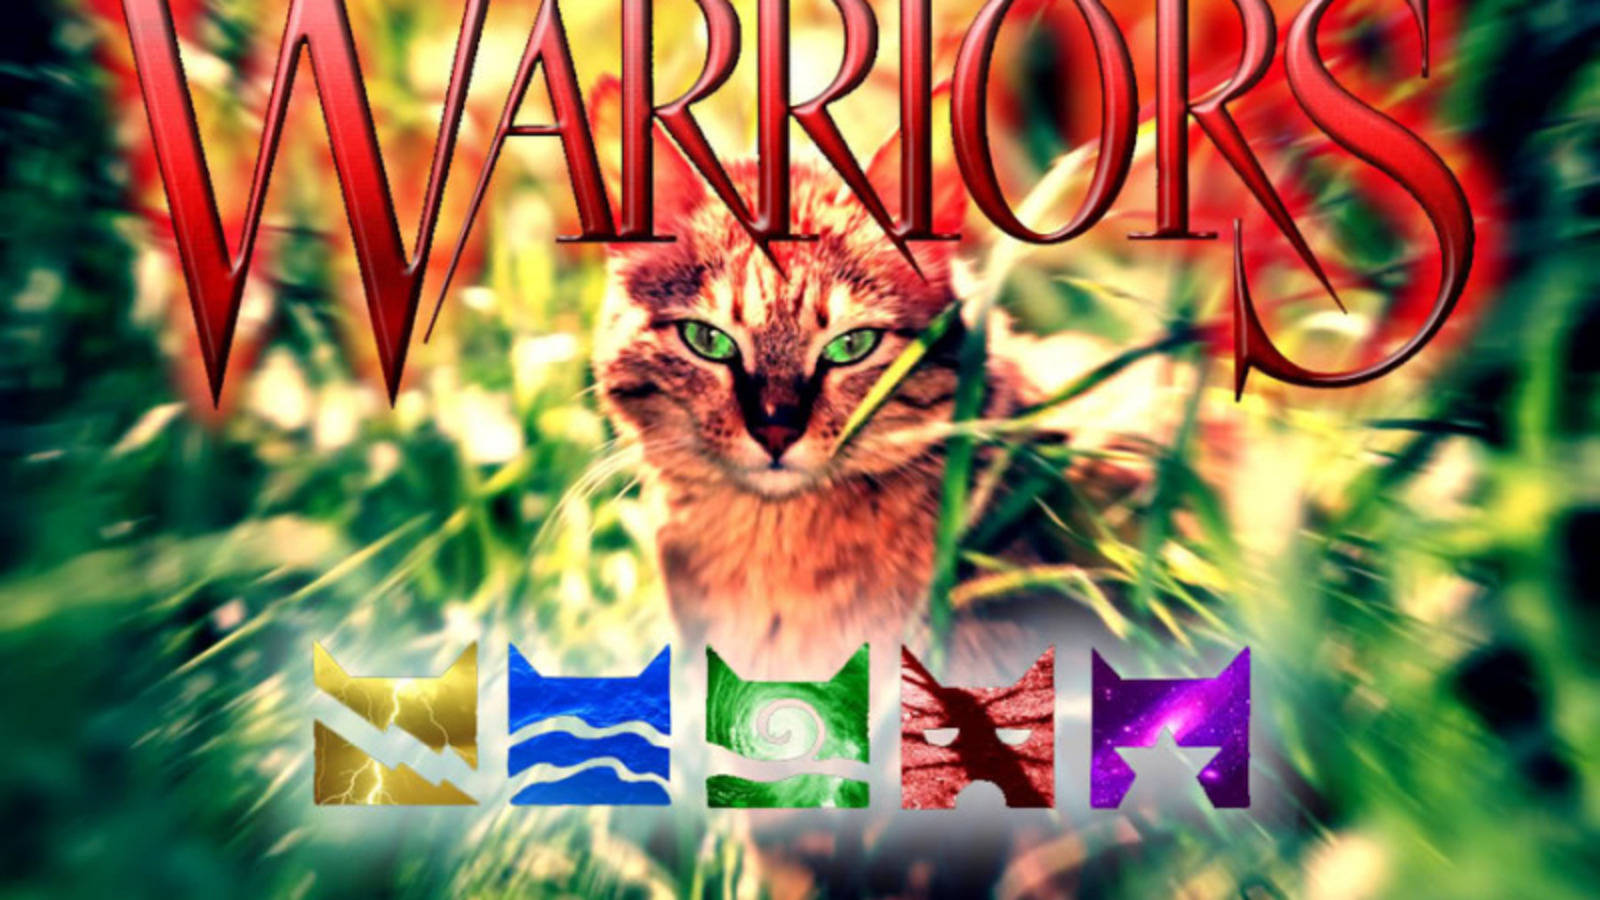 Warrior Cats Symbols Wallpaper